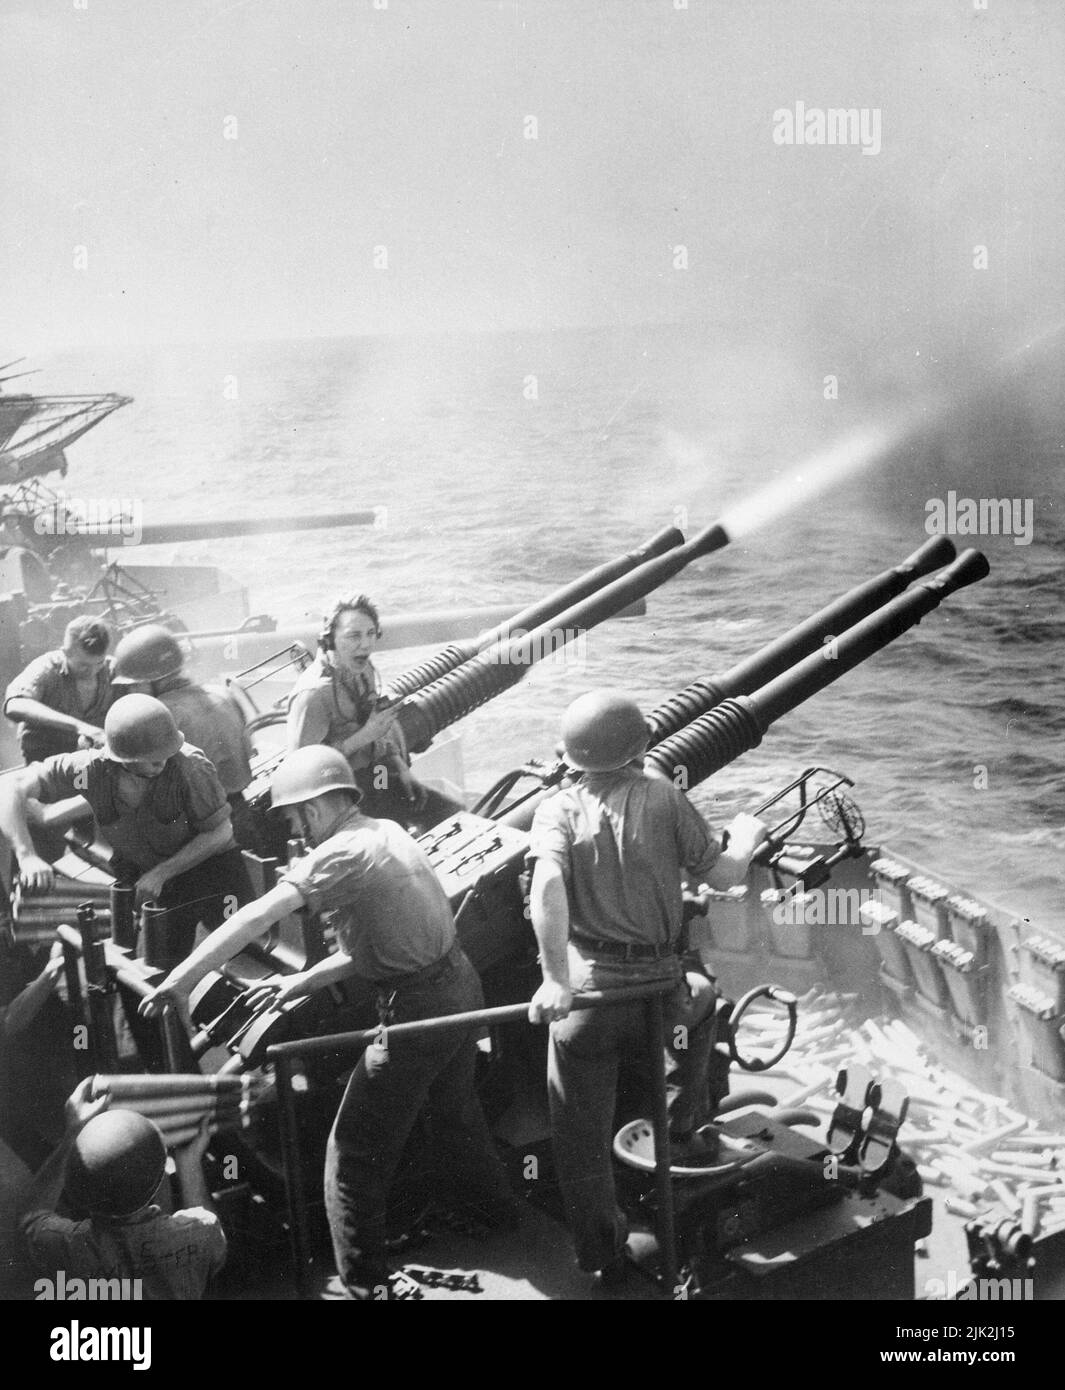 RAID der Task Force 58 auf Japan. Am 16. Februar 1945 feuerten 40mm Geschütze an Bord der USS Hornet, als die Flugzeuge des Flugzeugträgers Tokio überfielen. Aufgewendete Granaten und gebrauchsfertige Munitionskunition rechts notieren. Stockfoto